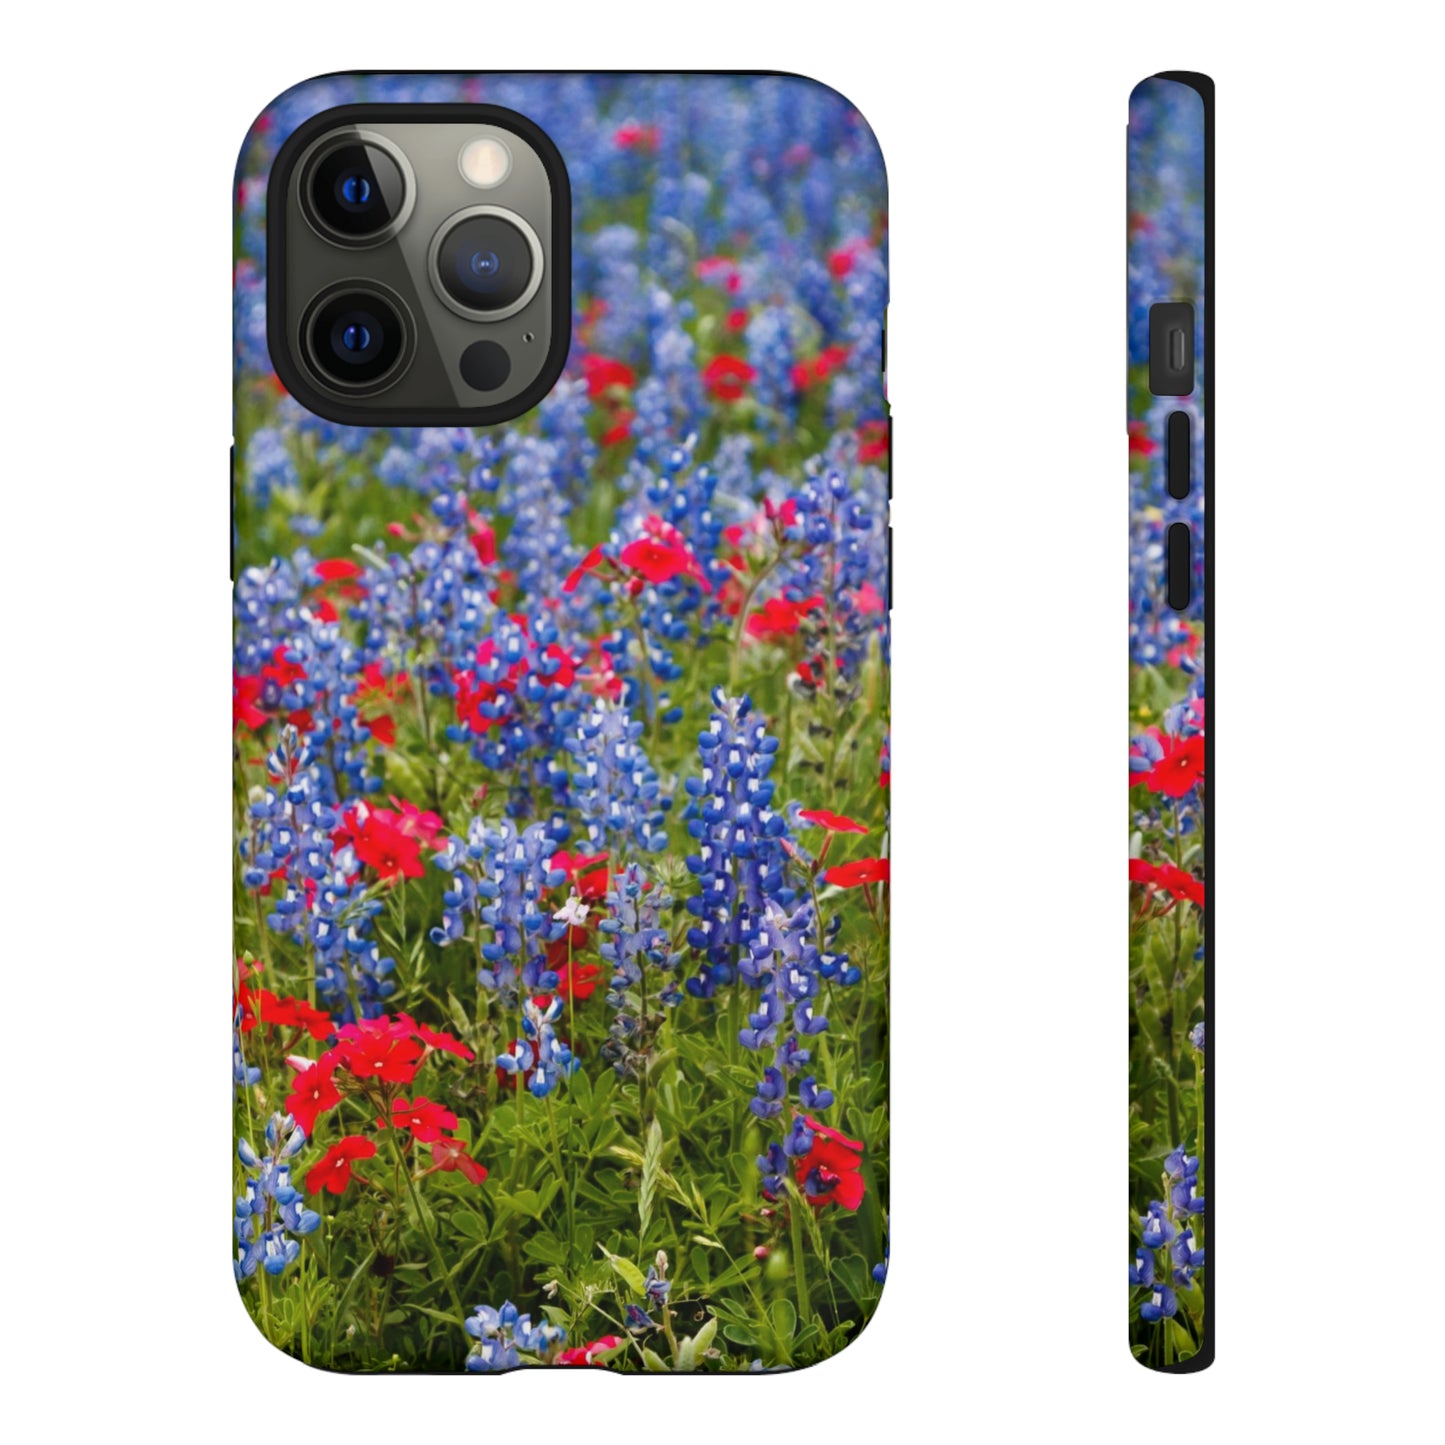 IPhone Case, Texas Bluebonnet IPhone Case, Colorful Phone Case, IPhone Protector Case, IPhone Cover